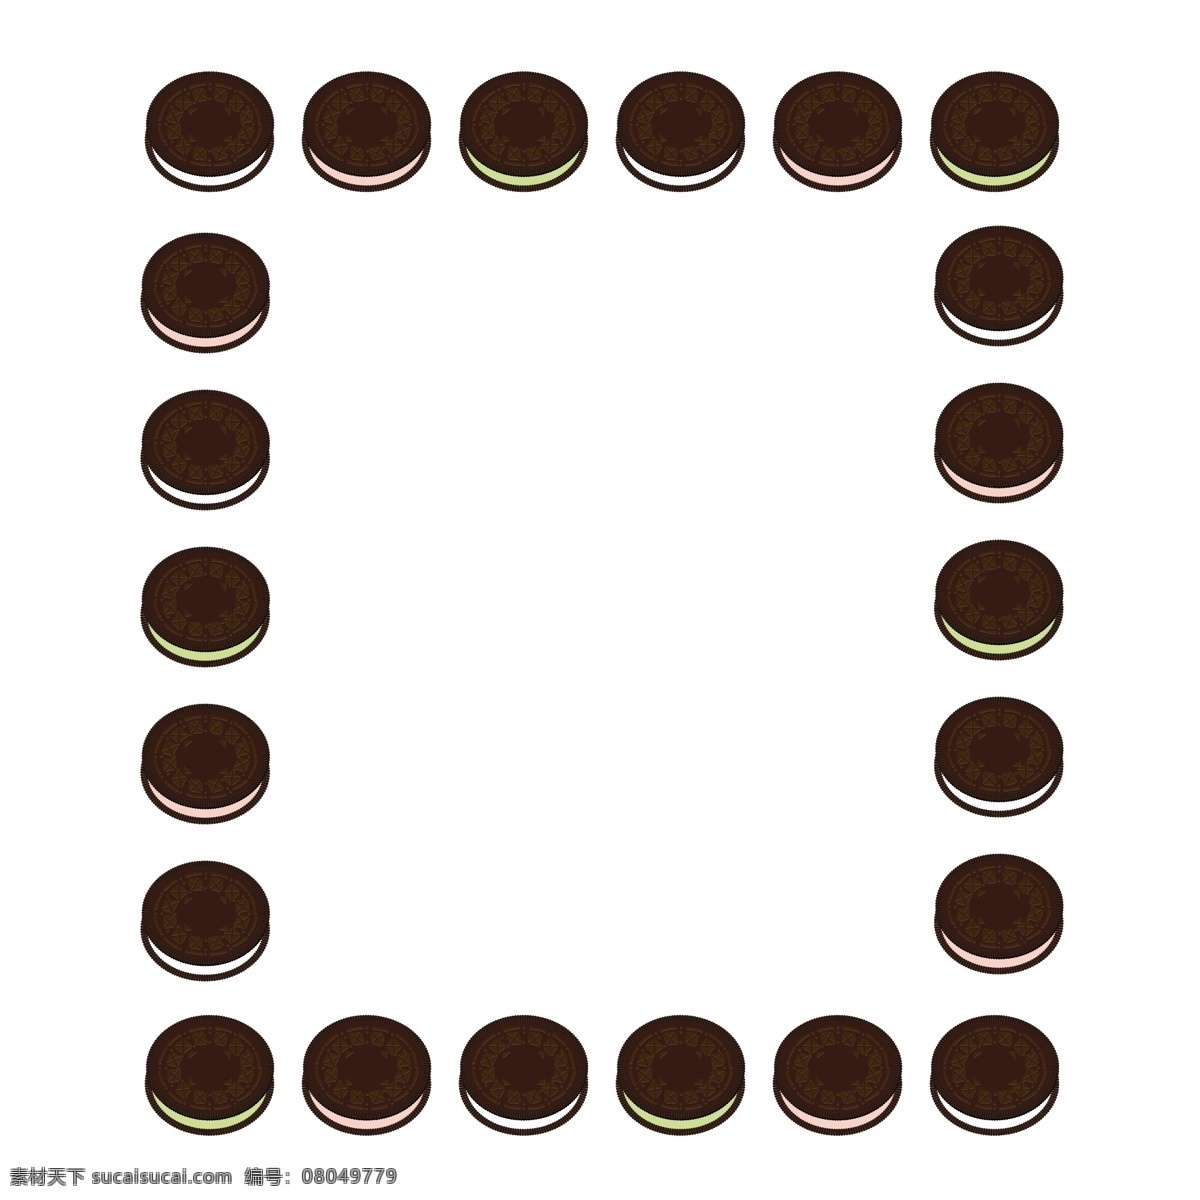 味 巧克力 饼干 食物 矢量 边框 食物边框 巧克力饼干 饼干边框 矢量边框元素